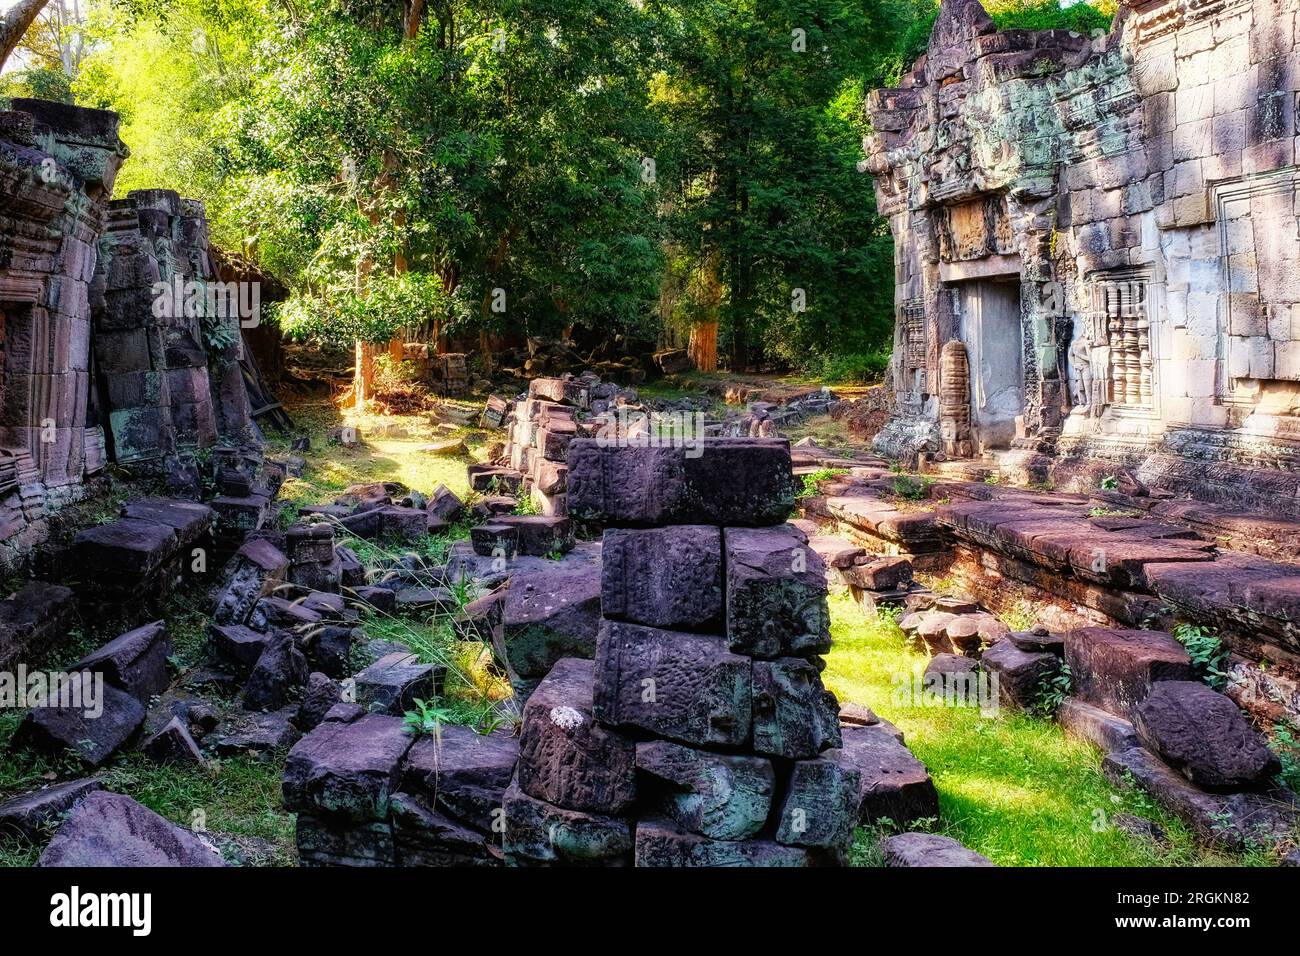 L'étreinte de la nature : ruines antiques de la civilisation khmère trouvées dans la forêt cambodgienne, façonnant un paysage pittoresque. Banque D'Images